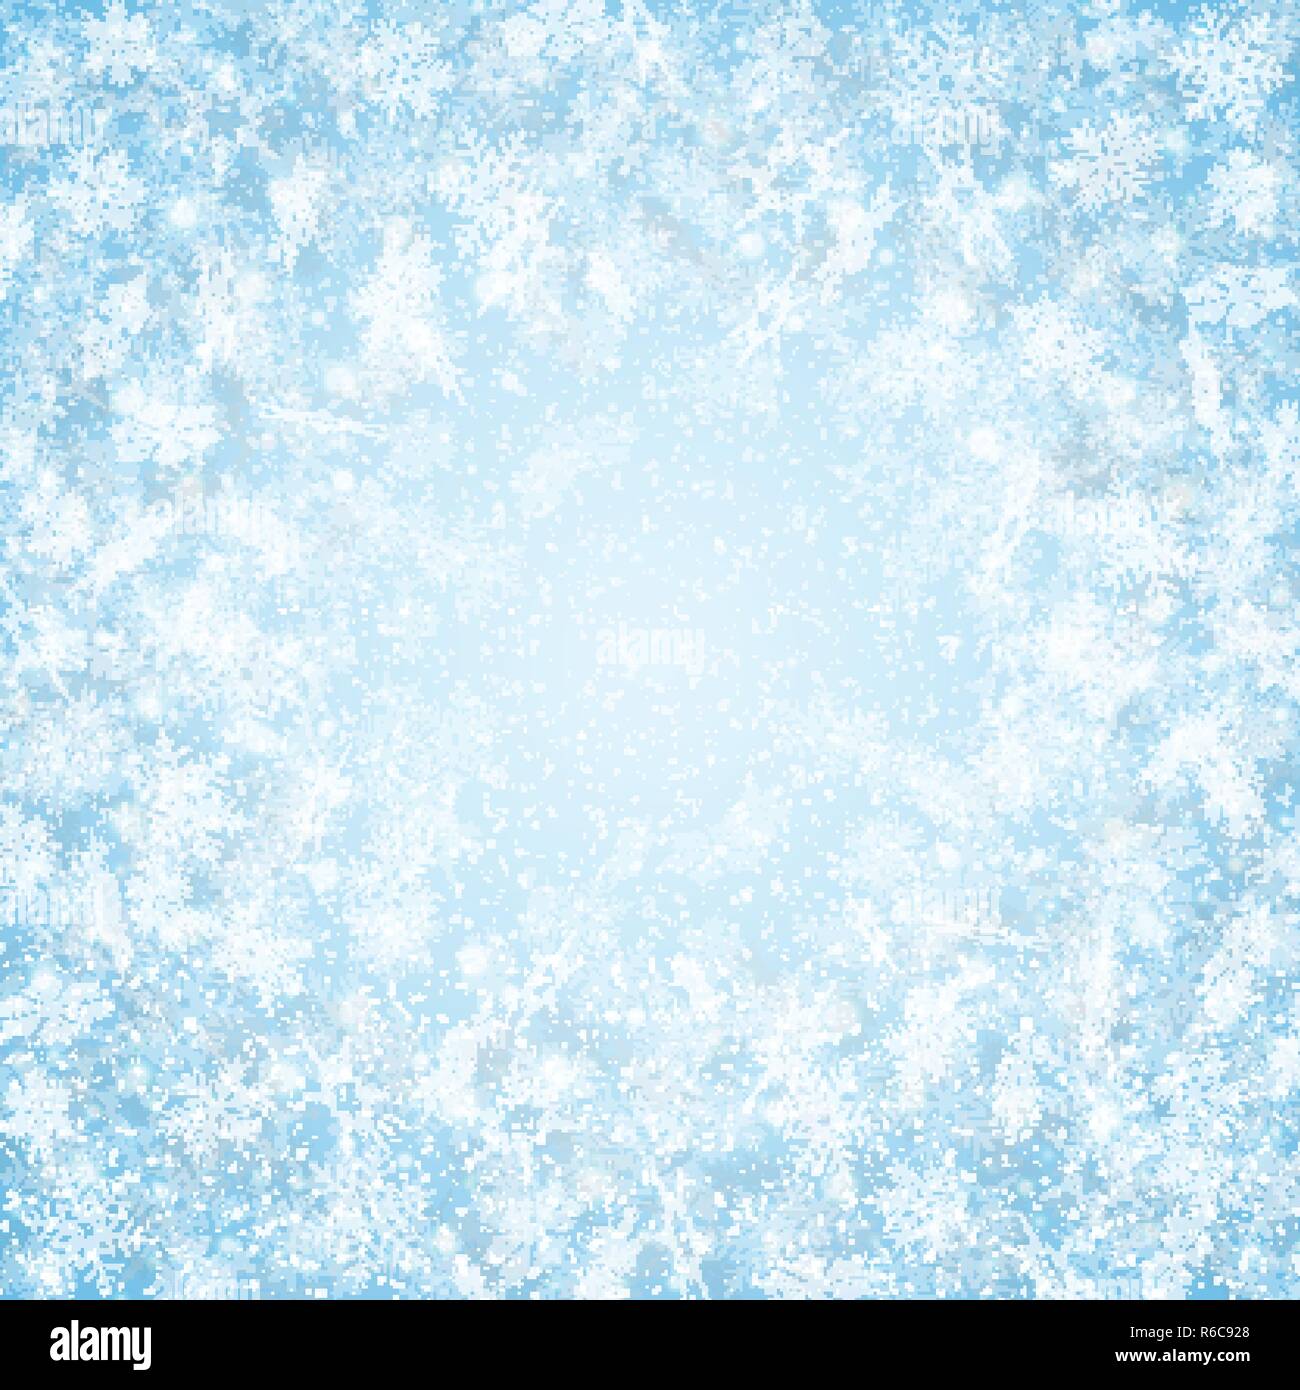 Weihnachten Zentrum blauer Himmel Schneeflocken Muster Hintergrund, Vector EPS 10. Stock Vektor